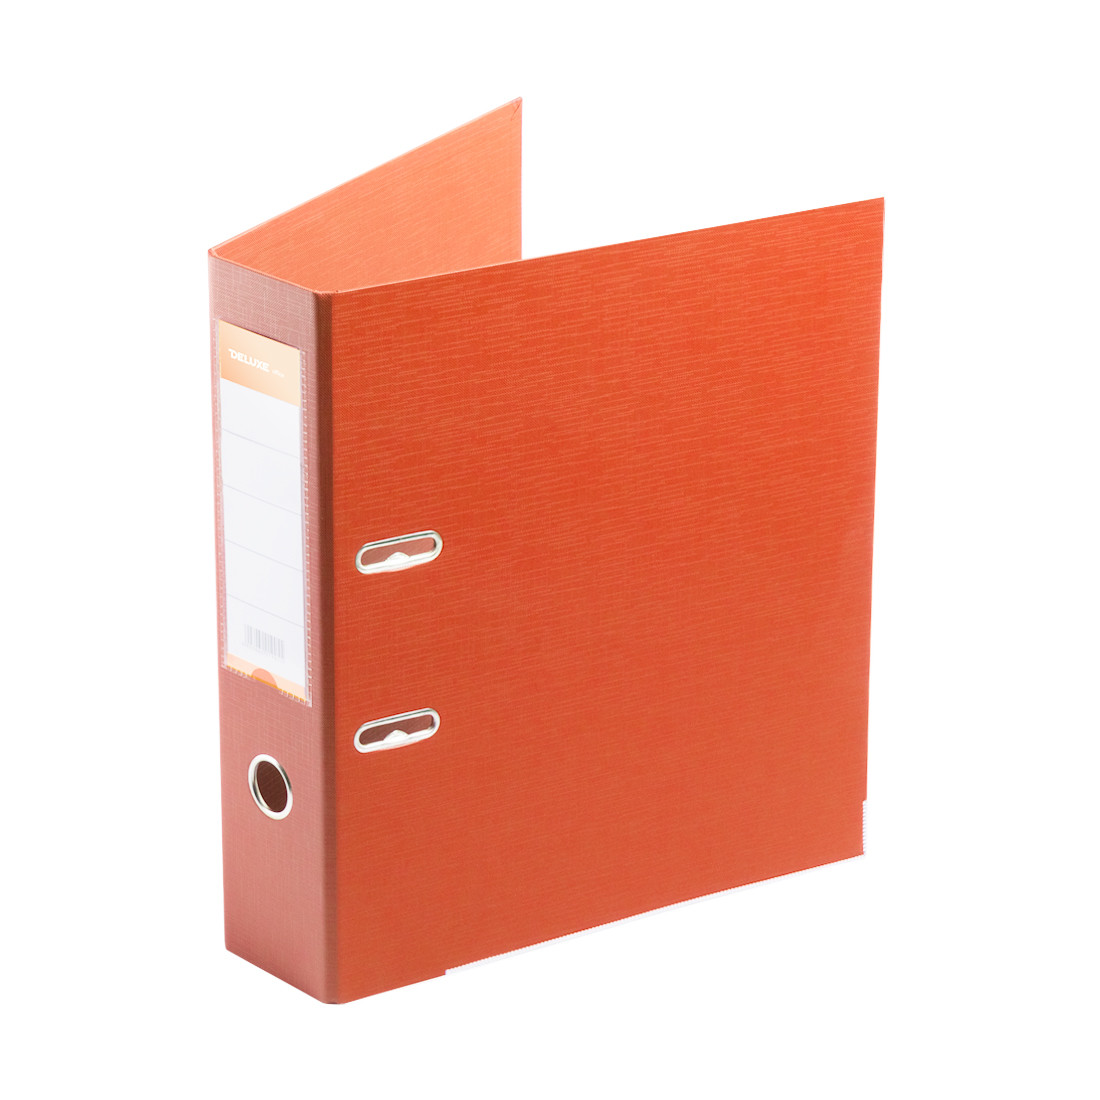 Папка-регистратор Deluxe с арочным механизмом, Office 3-OE6 (3" ORANGE), А4, 70 мм, оранжевый, фото 1